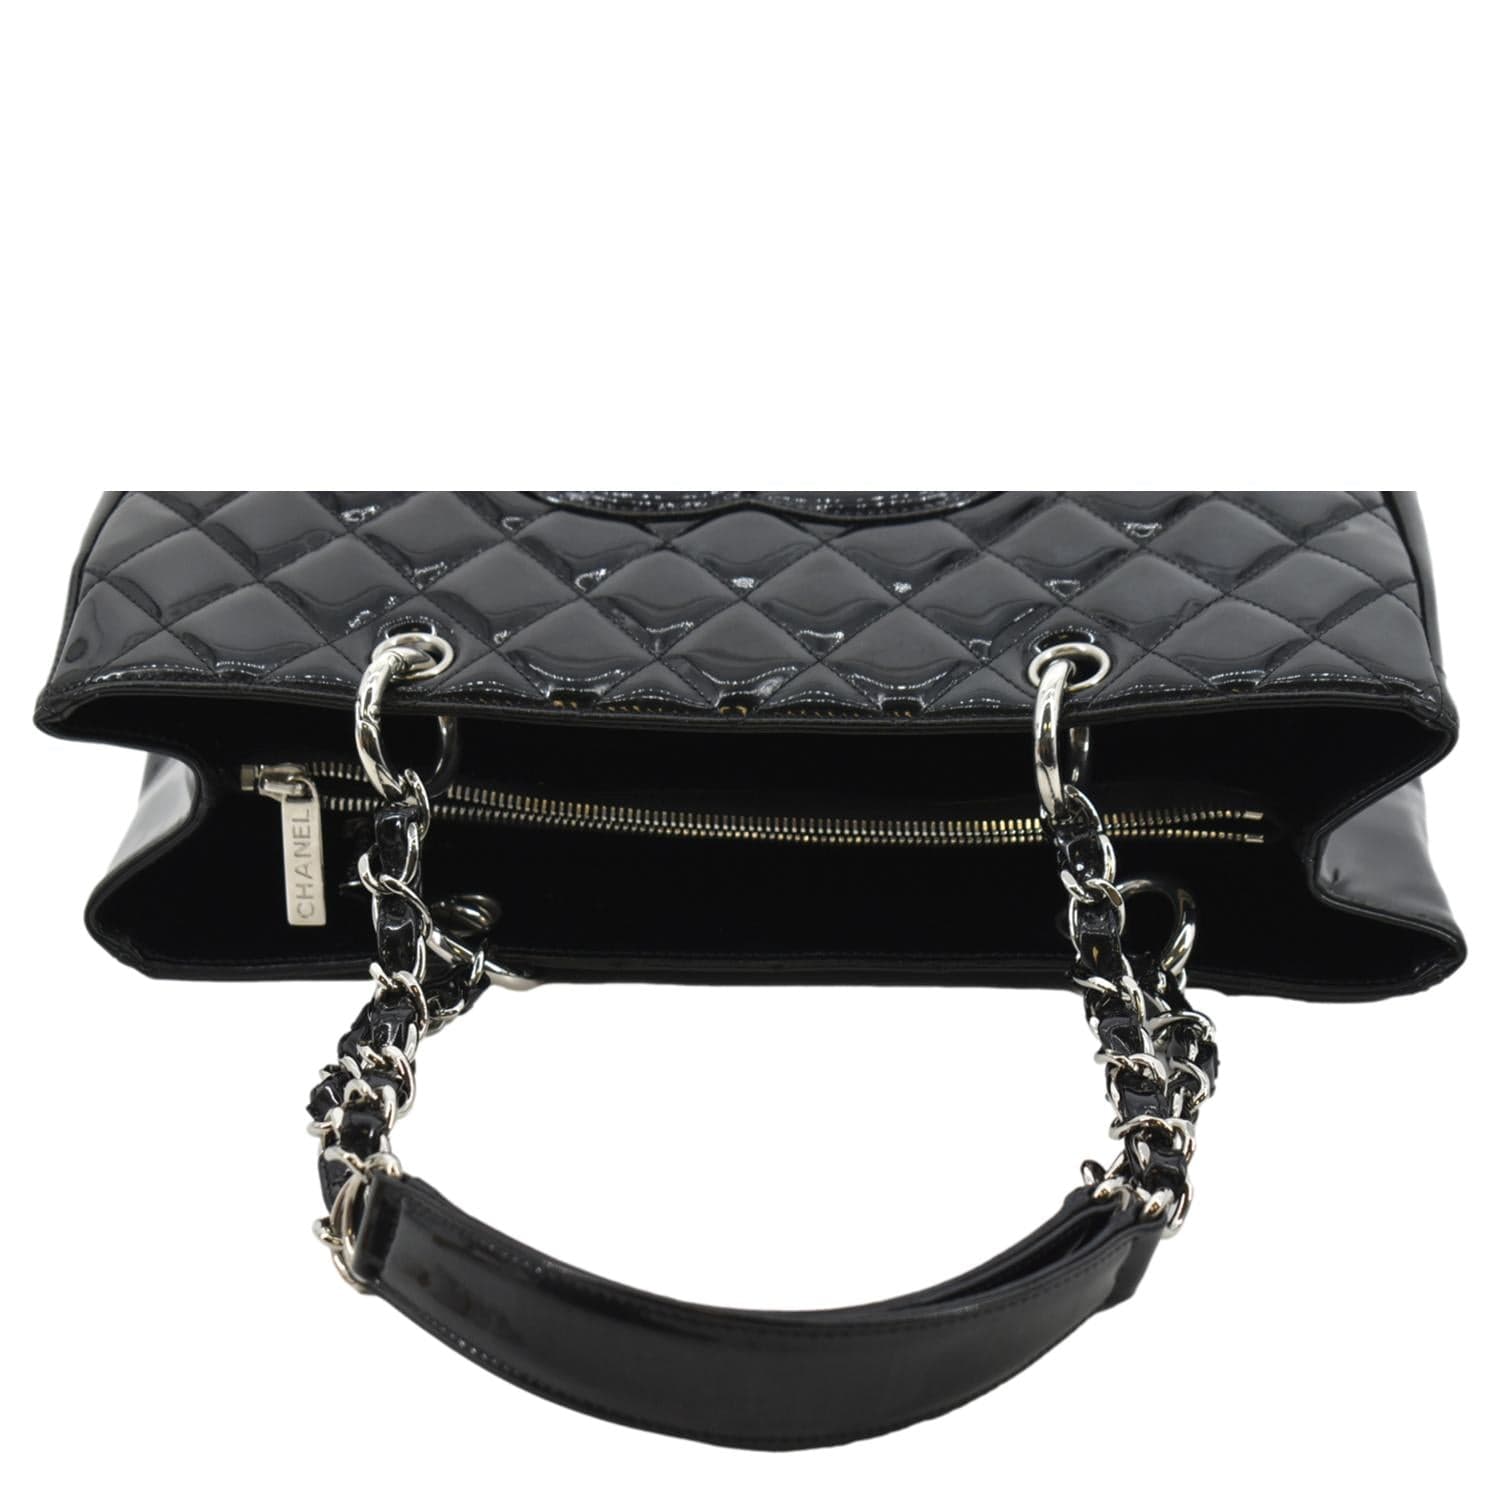 Chanel Black Caviar Grand Shopper Tote GST Bag SHW 67160 For Sale